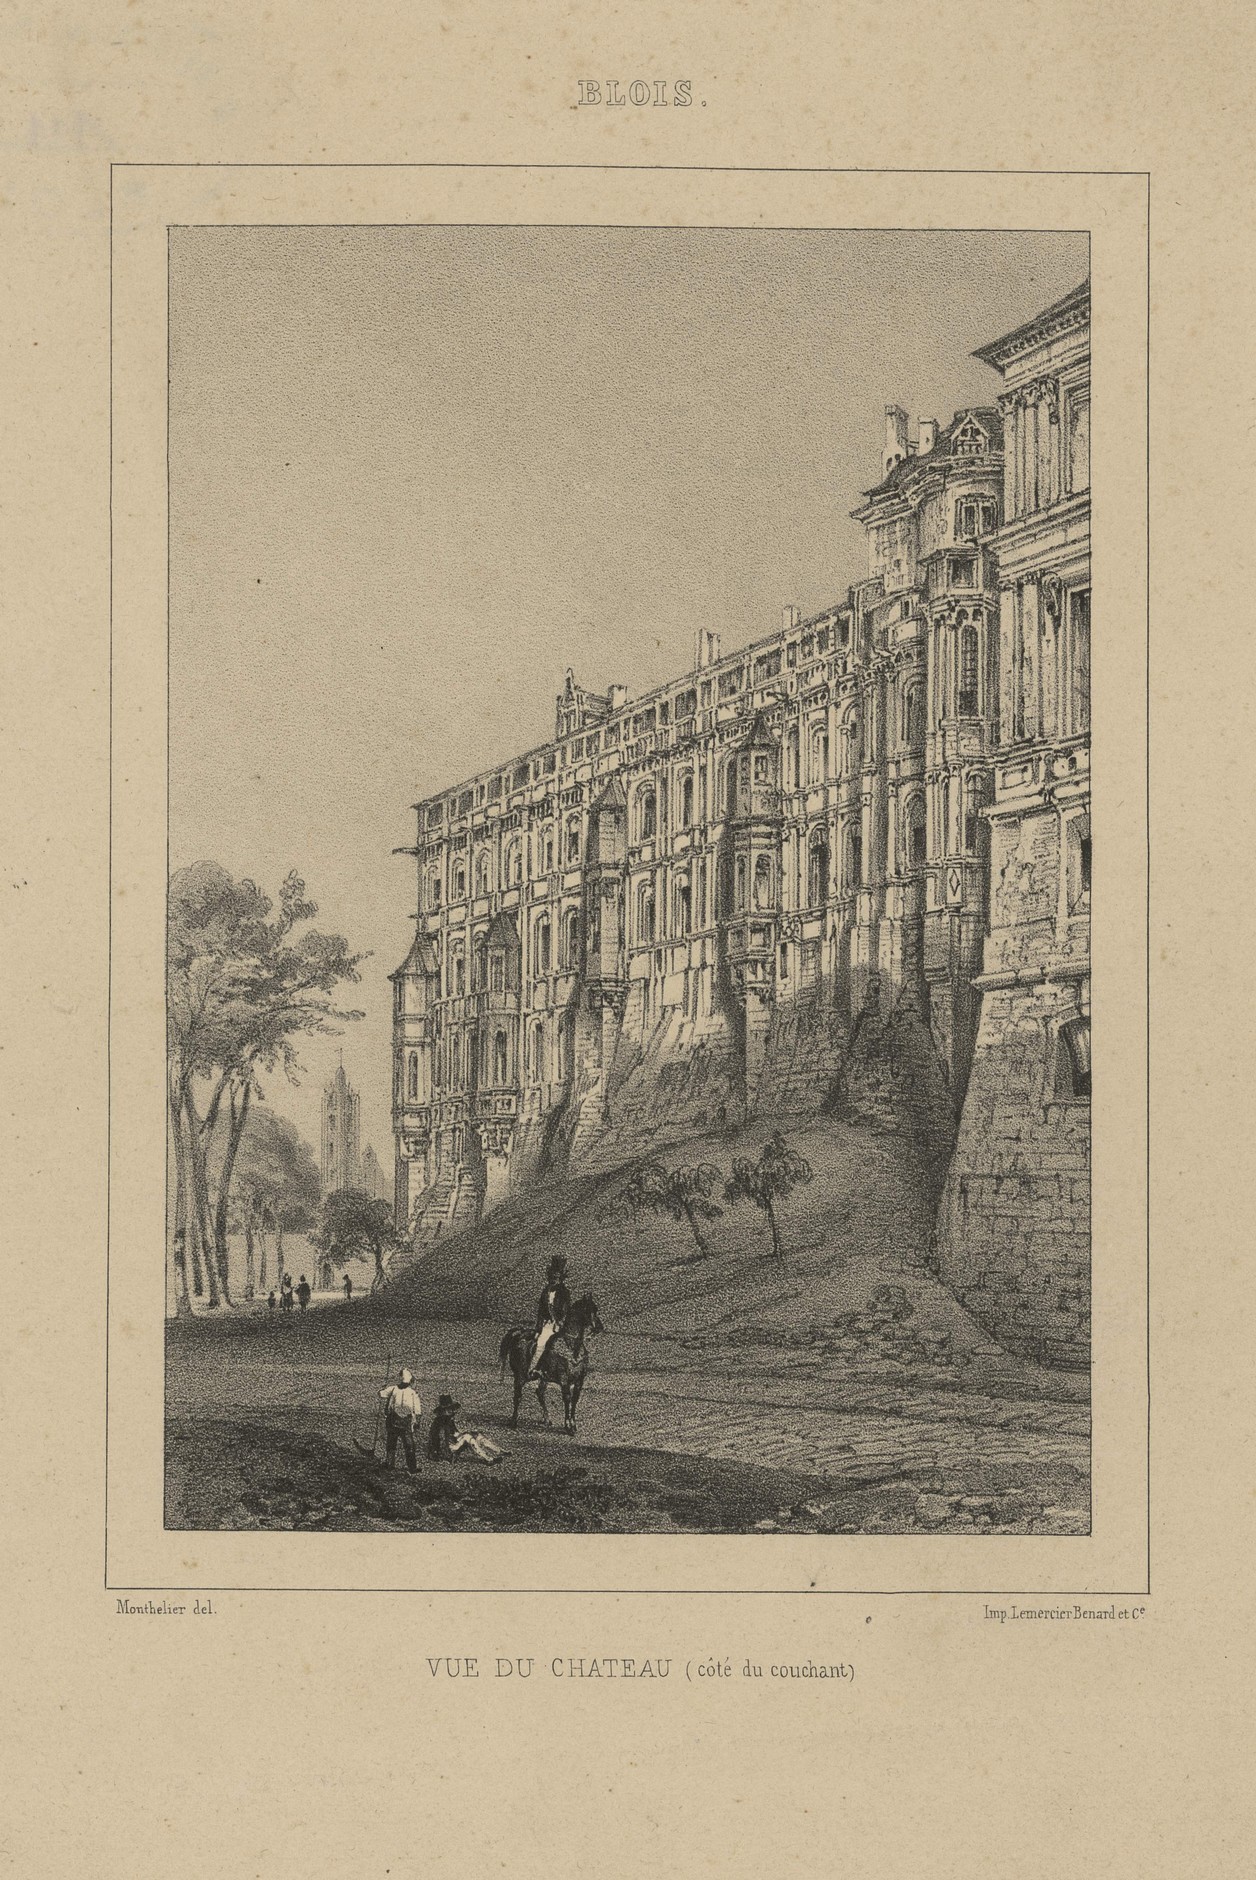 Monthelier, La façade des Loges du château de Blois, lithographie vers 1830